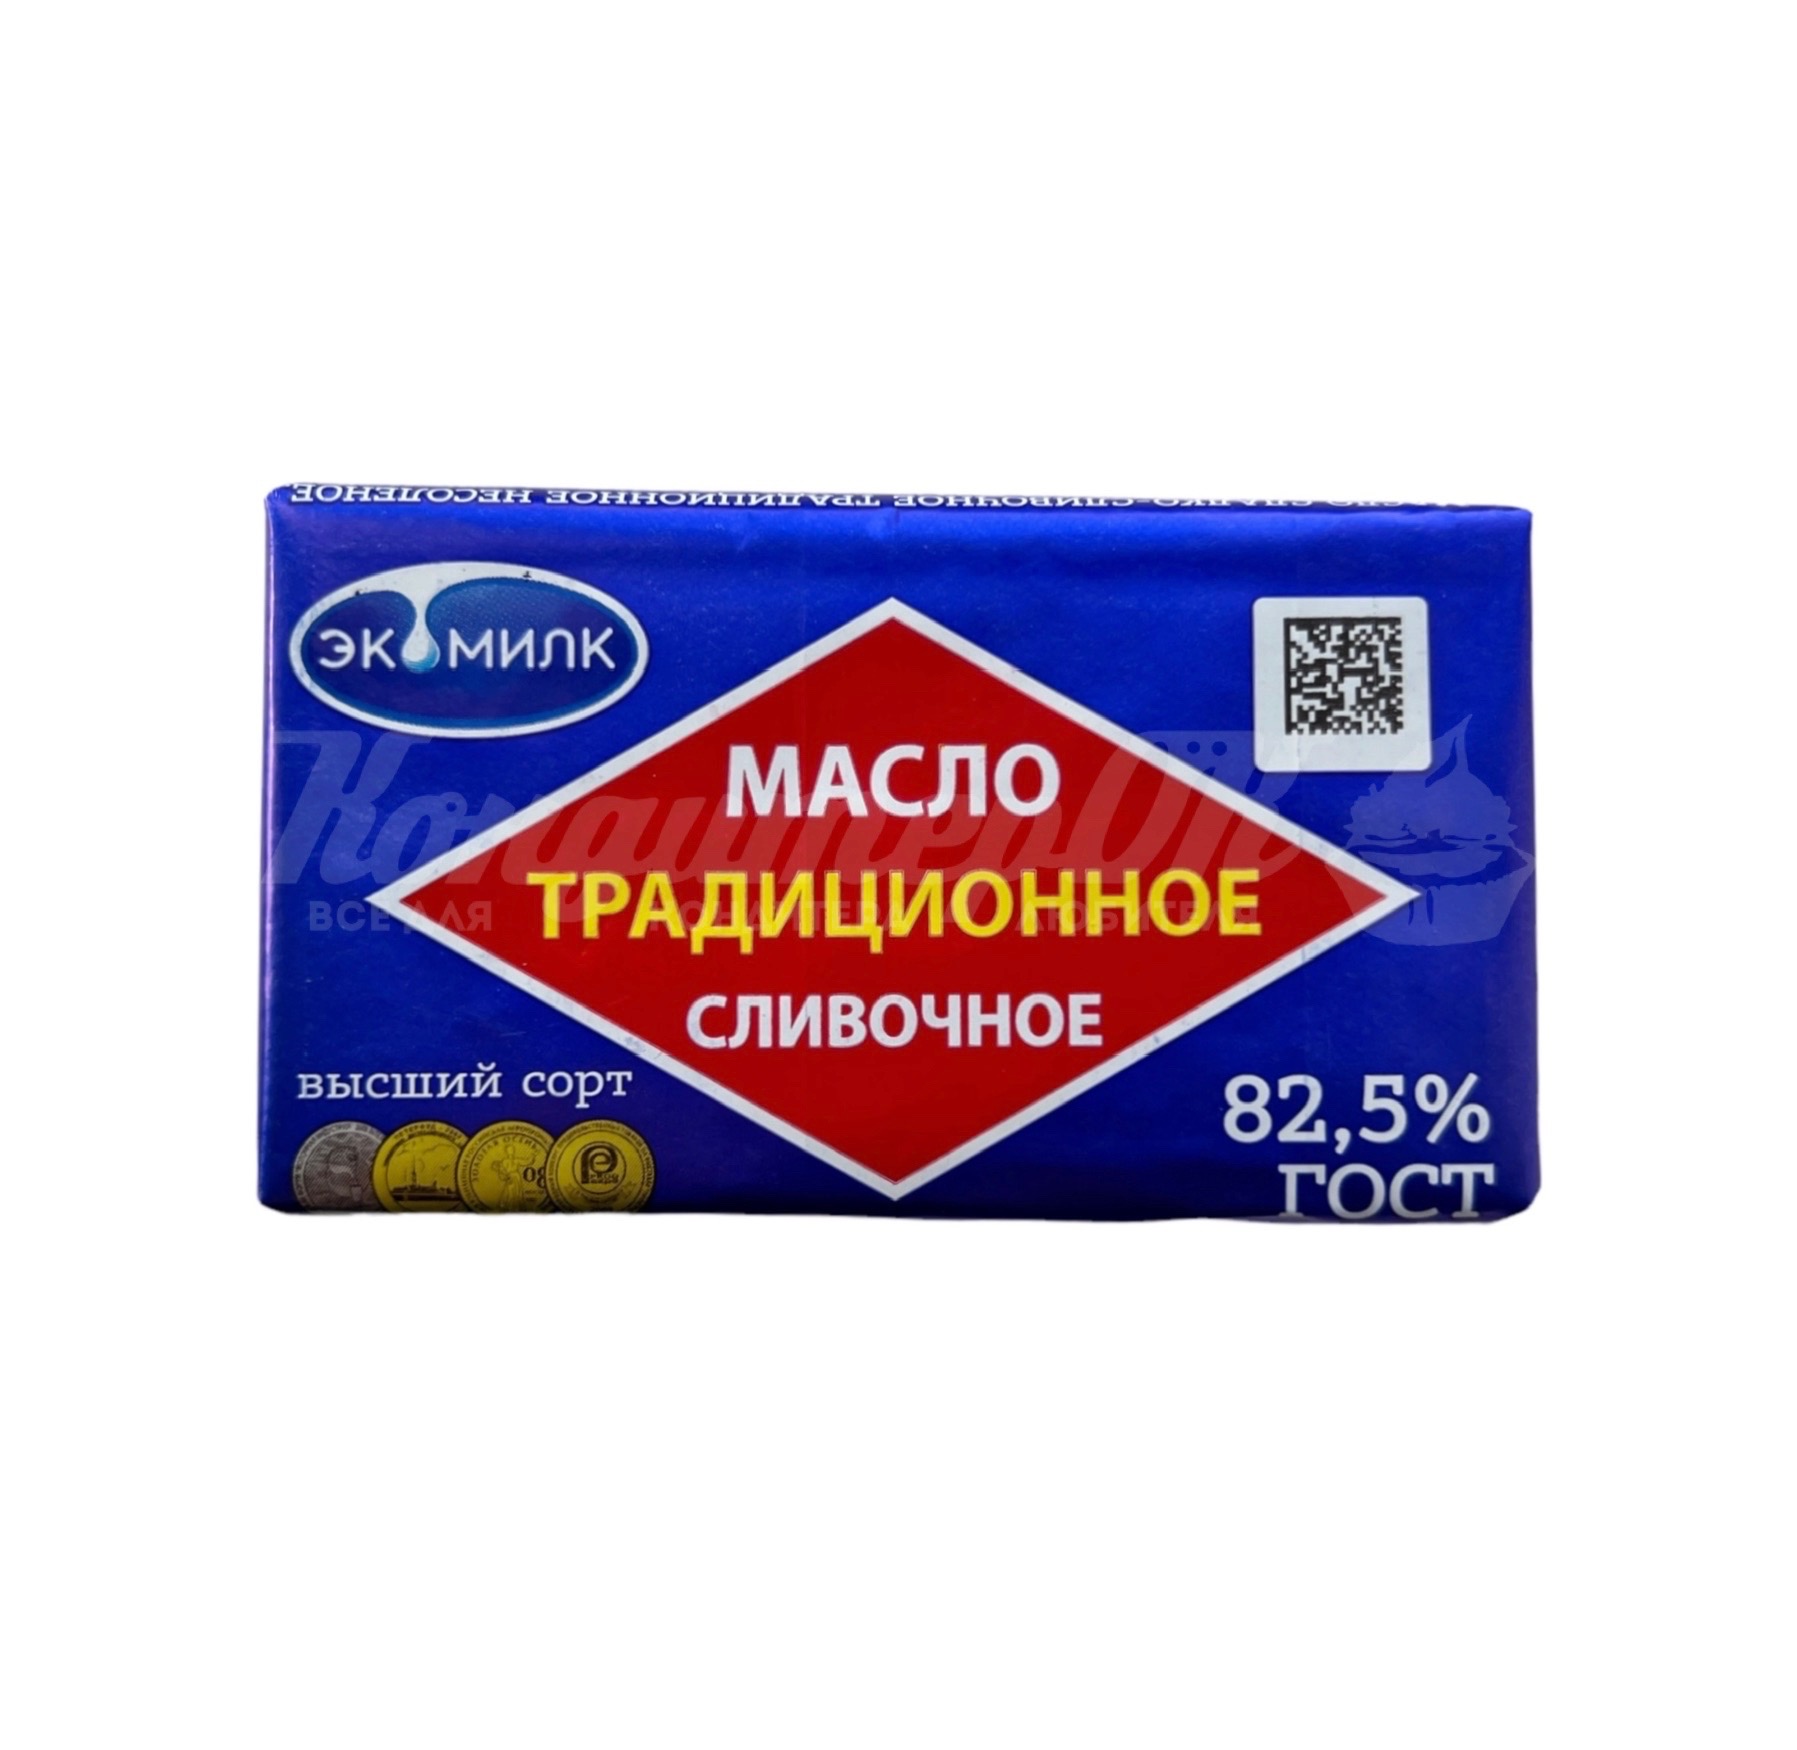 Масло сливочное Традиционное Экомилк 82,5% 380 г